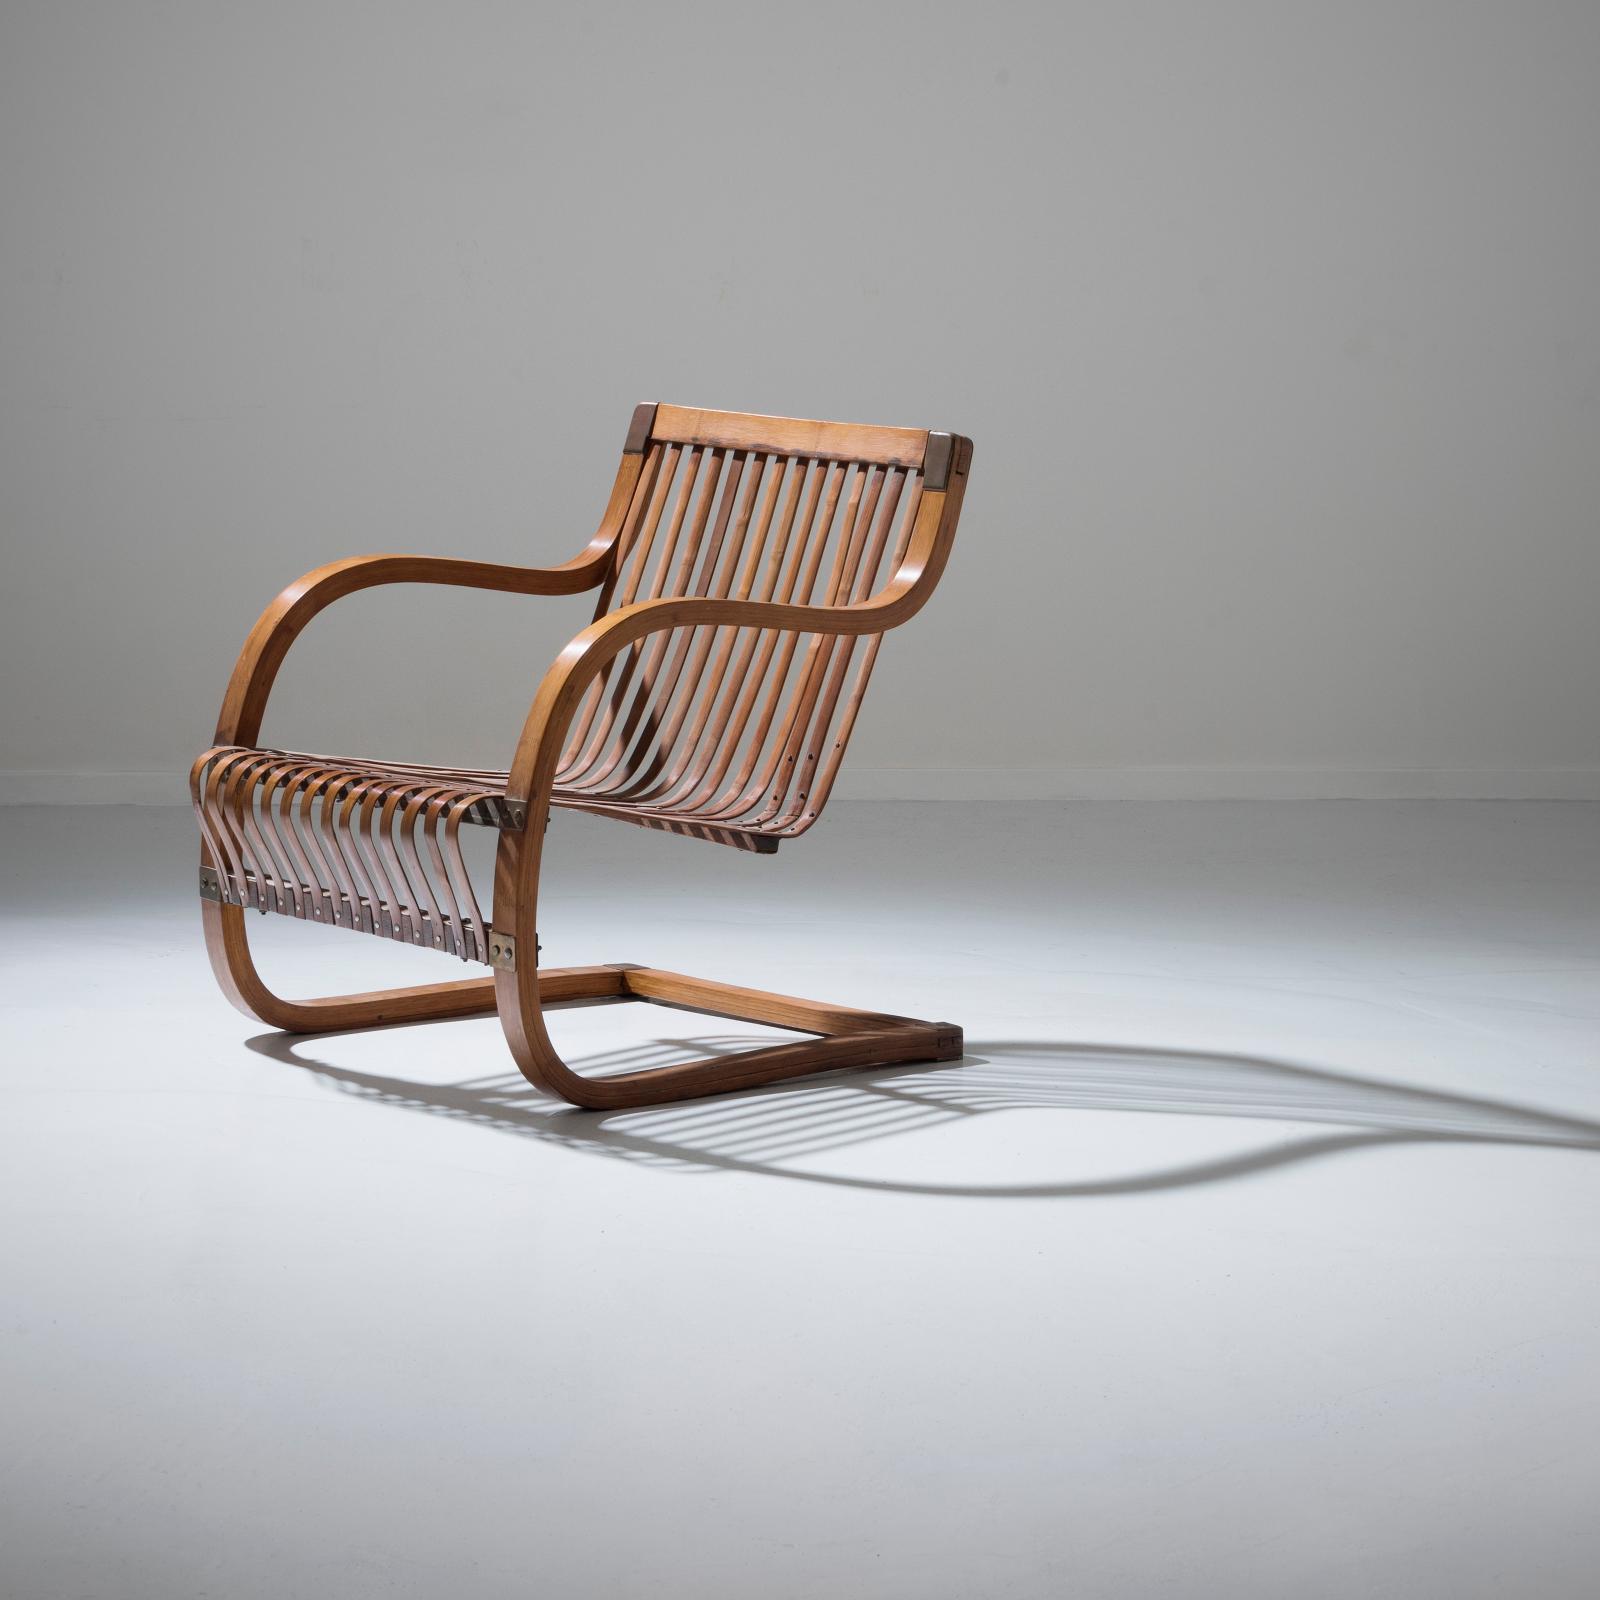 Ubunji Kidokoro, fauteuil en bambou, laiton et lamelles de bambou, vers 1937, 74 x 74 x 70 cm. Bruxelles, Cercle de Lorraine, 11 décembre 2017. Pierre